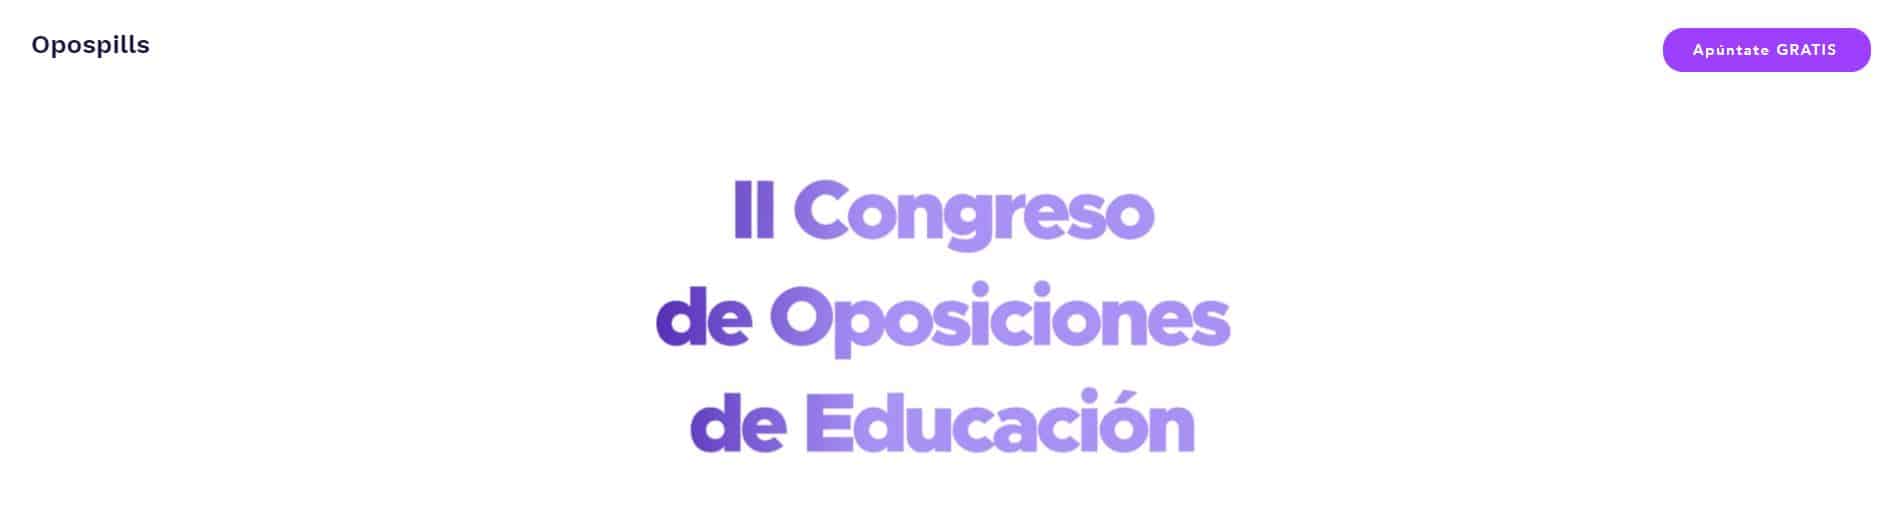 II congreso de oposiciones de educacion